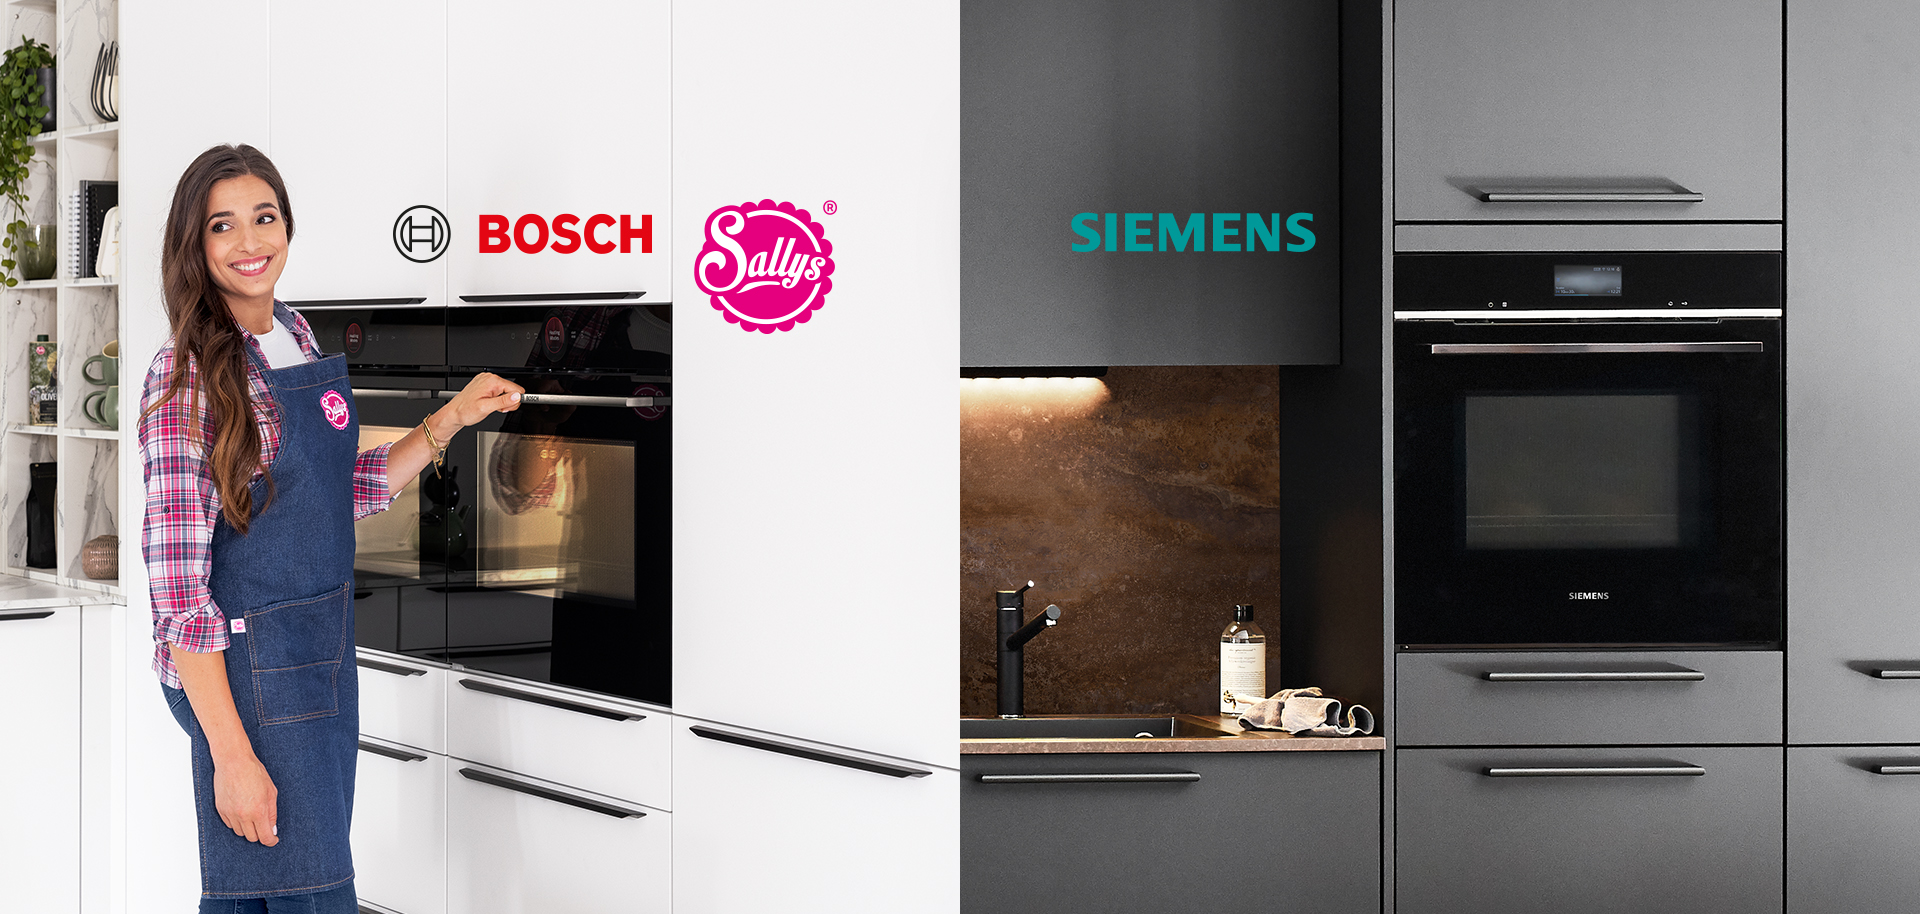 Osoba s úsměvem v zástěře představuje troubu Bosch, zatímco na opačné straně je ukázána moderní kuchyně Siemens s elegantními spotřebiči.